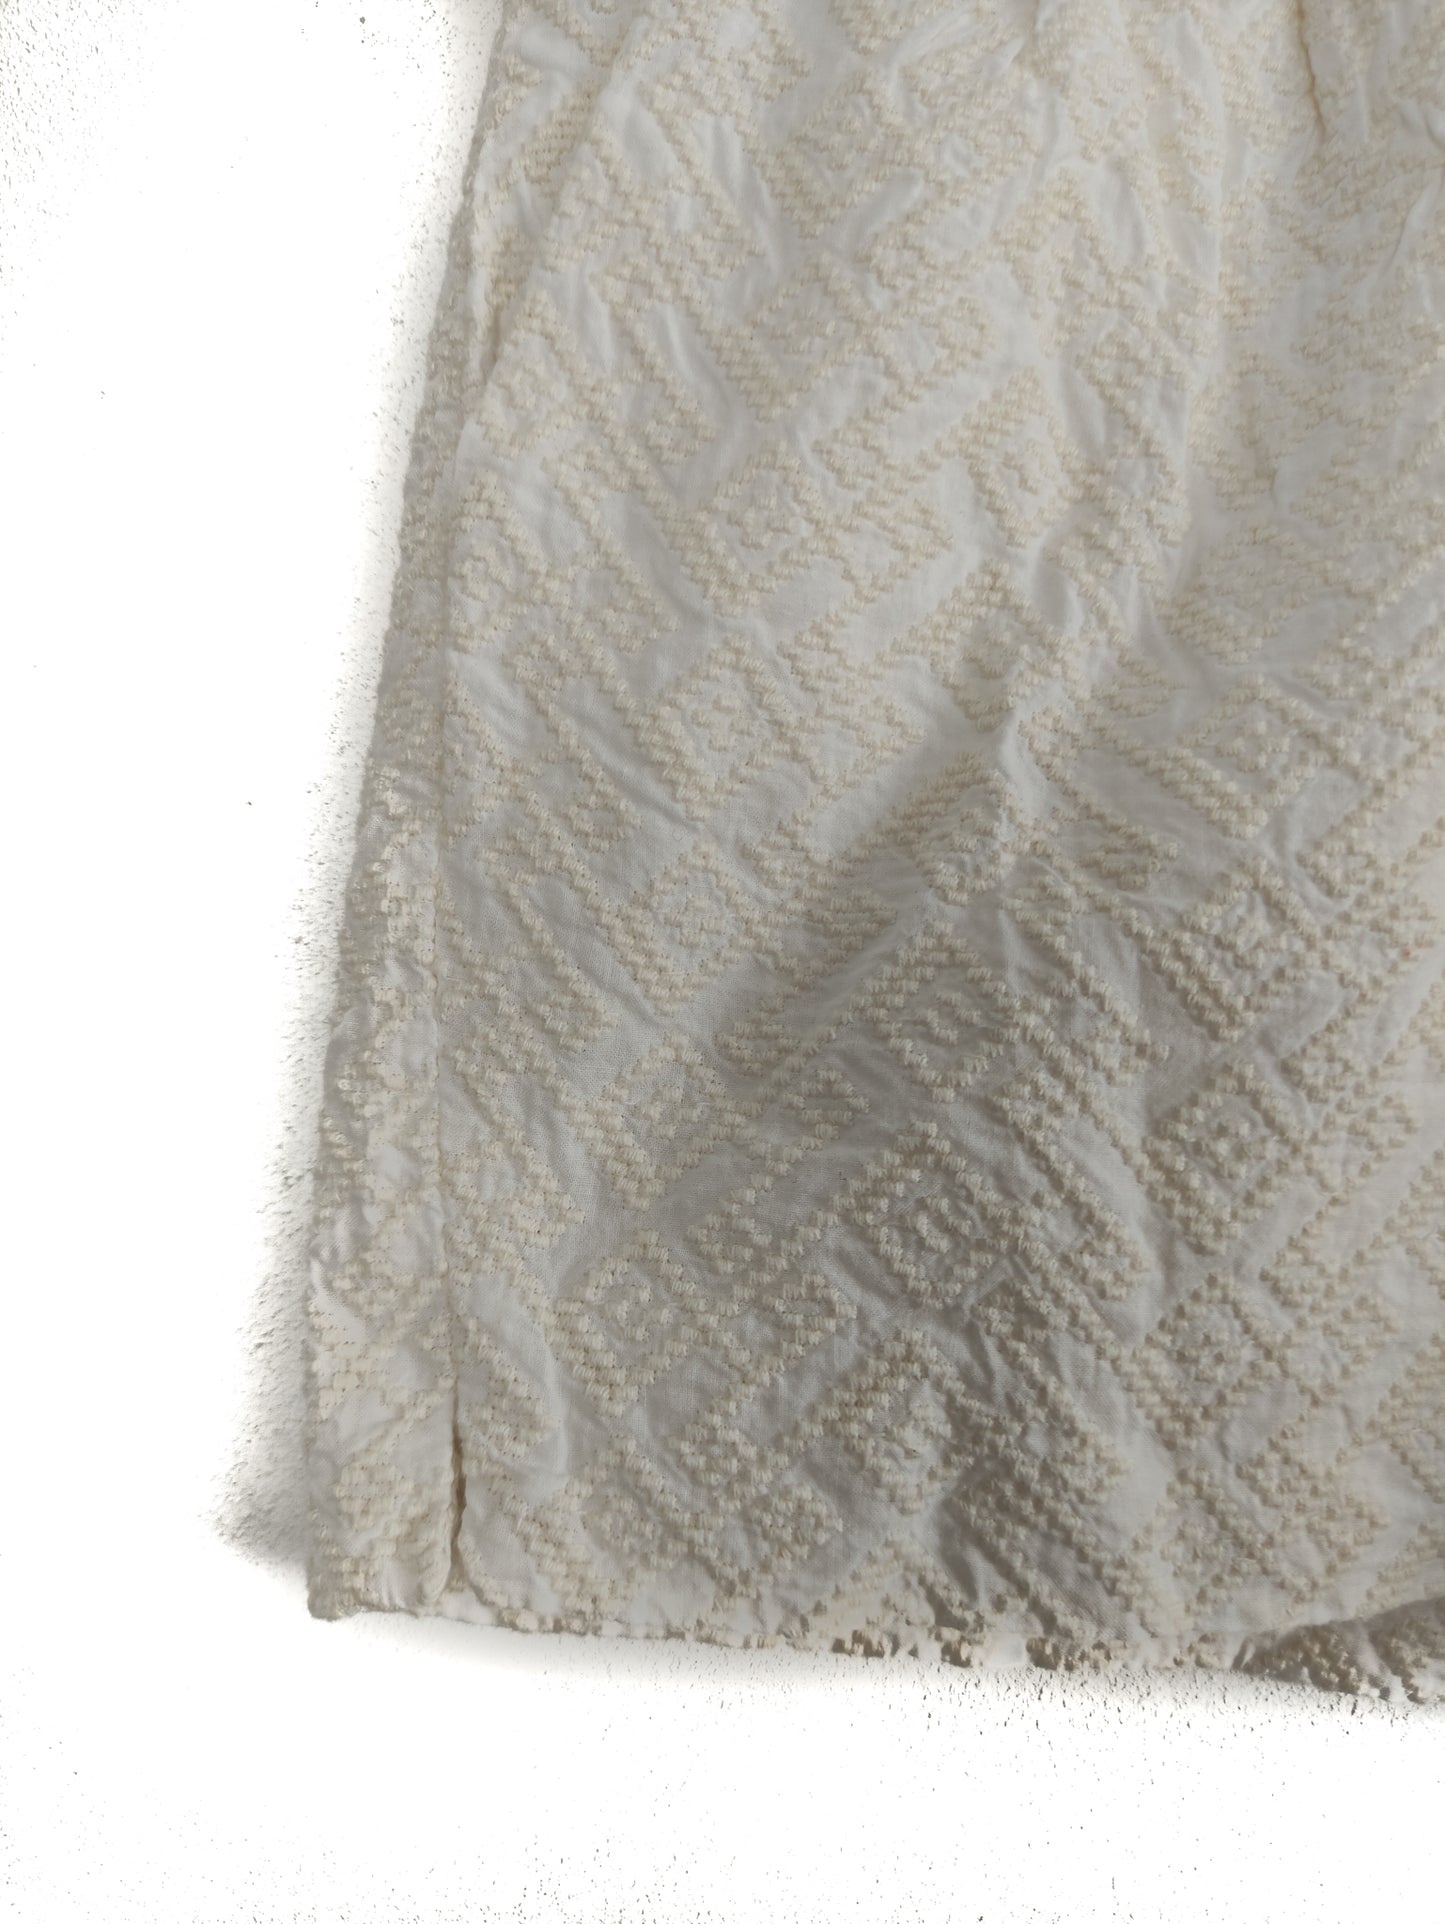 Γυναικείο Υφασμάτινο Σορτς BENETTON σε Off Λευκό χρώμα με Ανάγλυφο σχέδιο (Small)